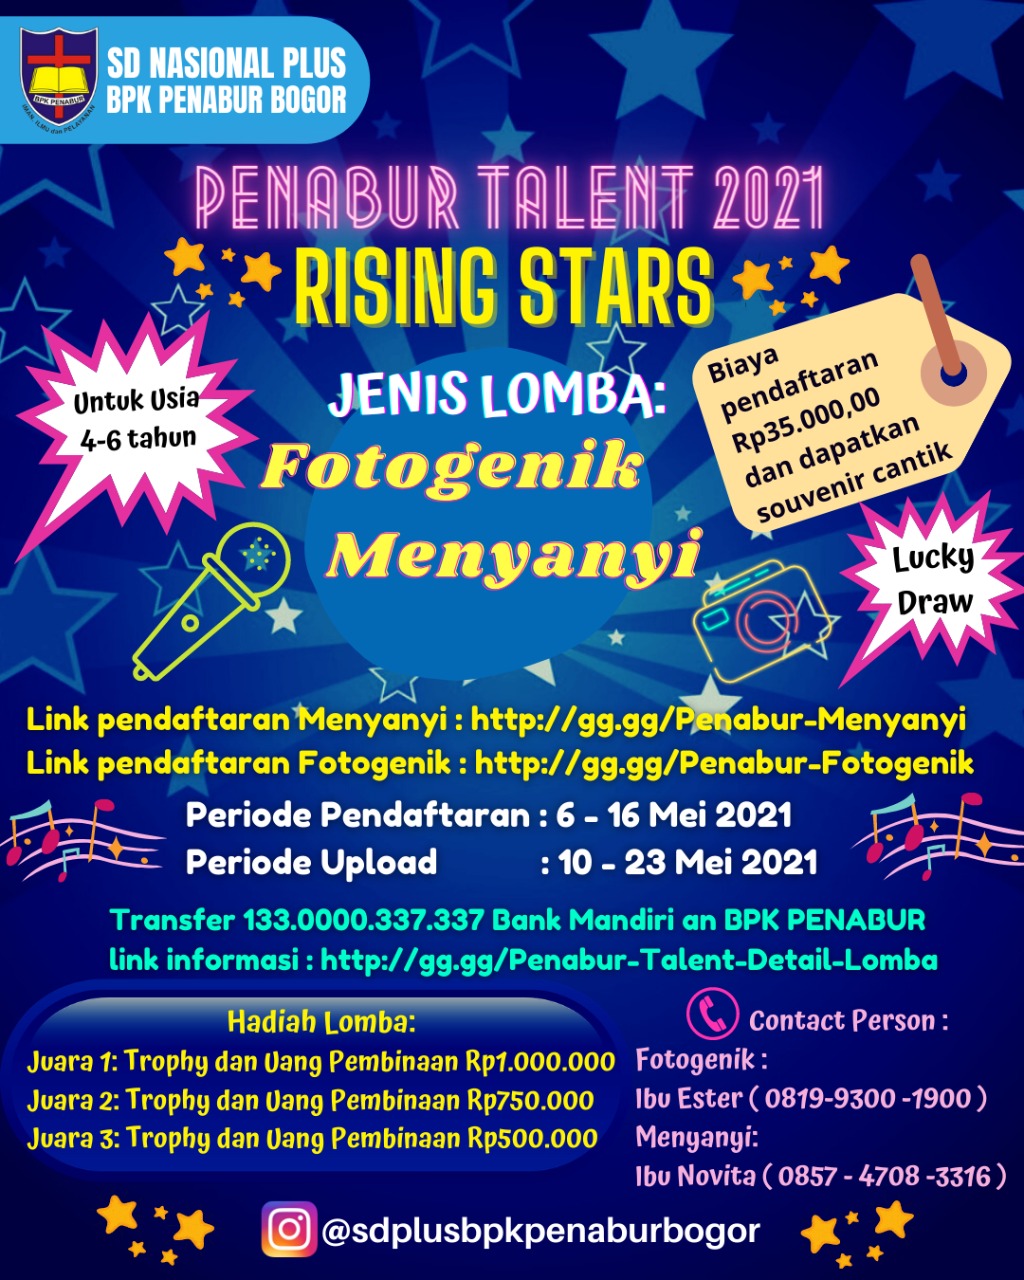 PENABUR TALENT 2021 "Rising Stars"